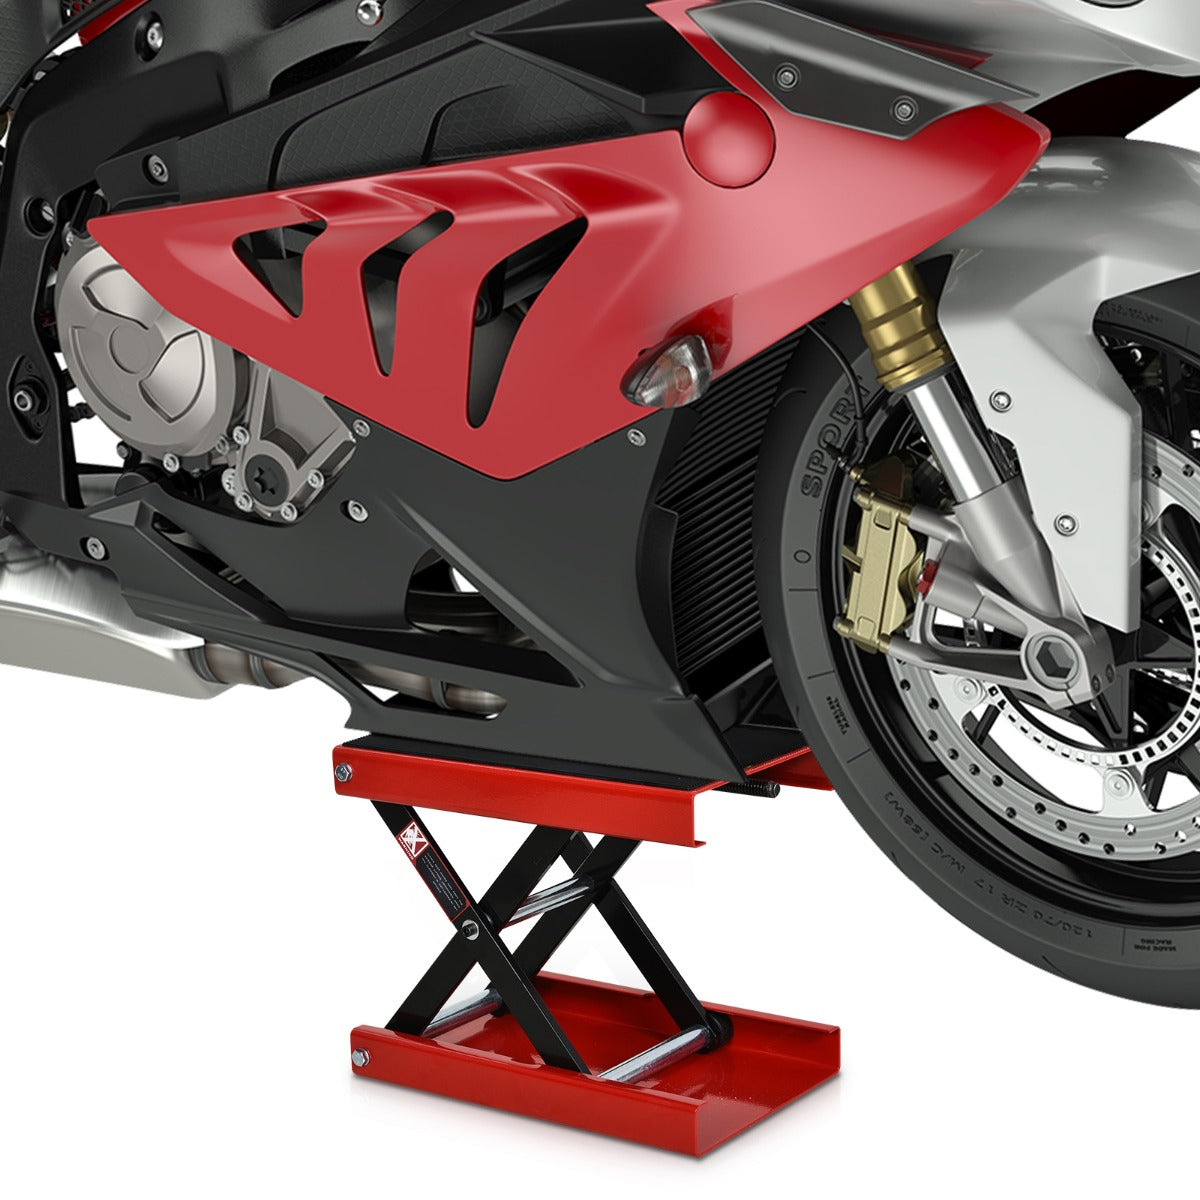 DURHAND Steel Manual Repair Motorcycle Lift Platform Red - Inspirely